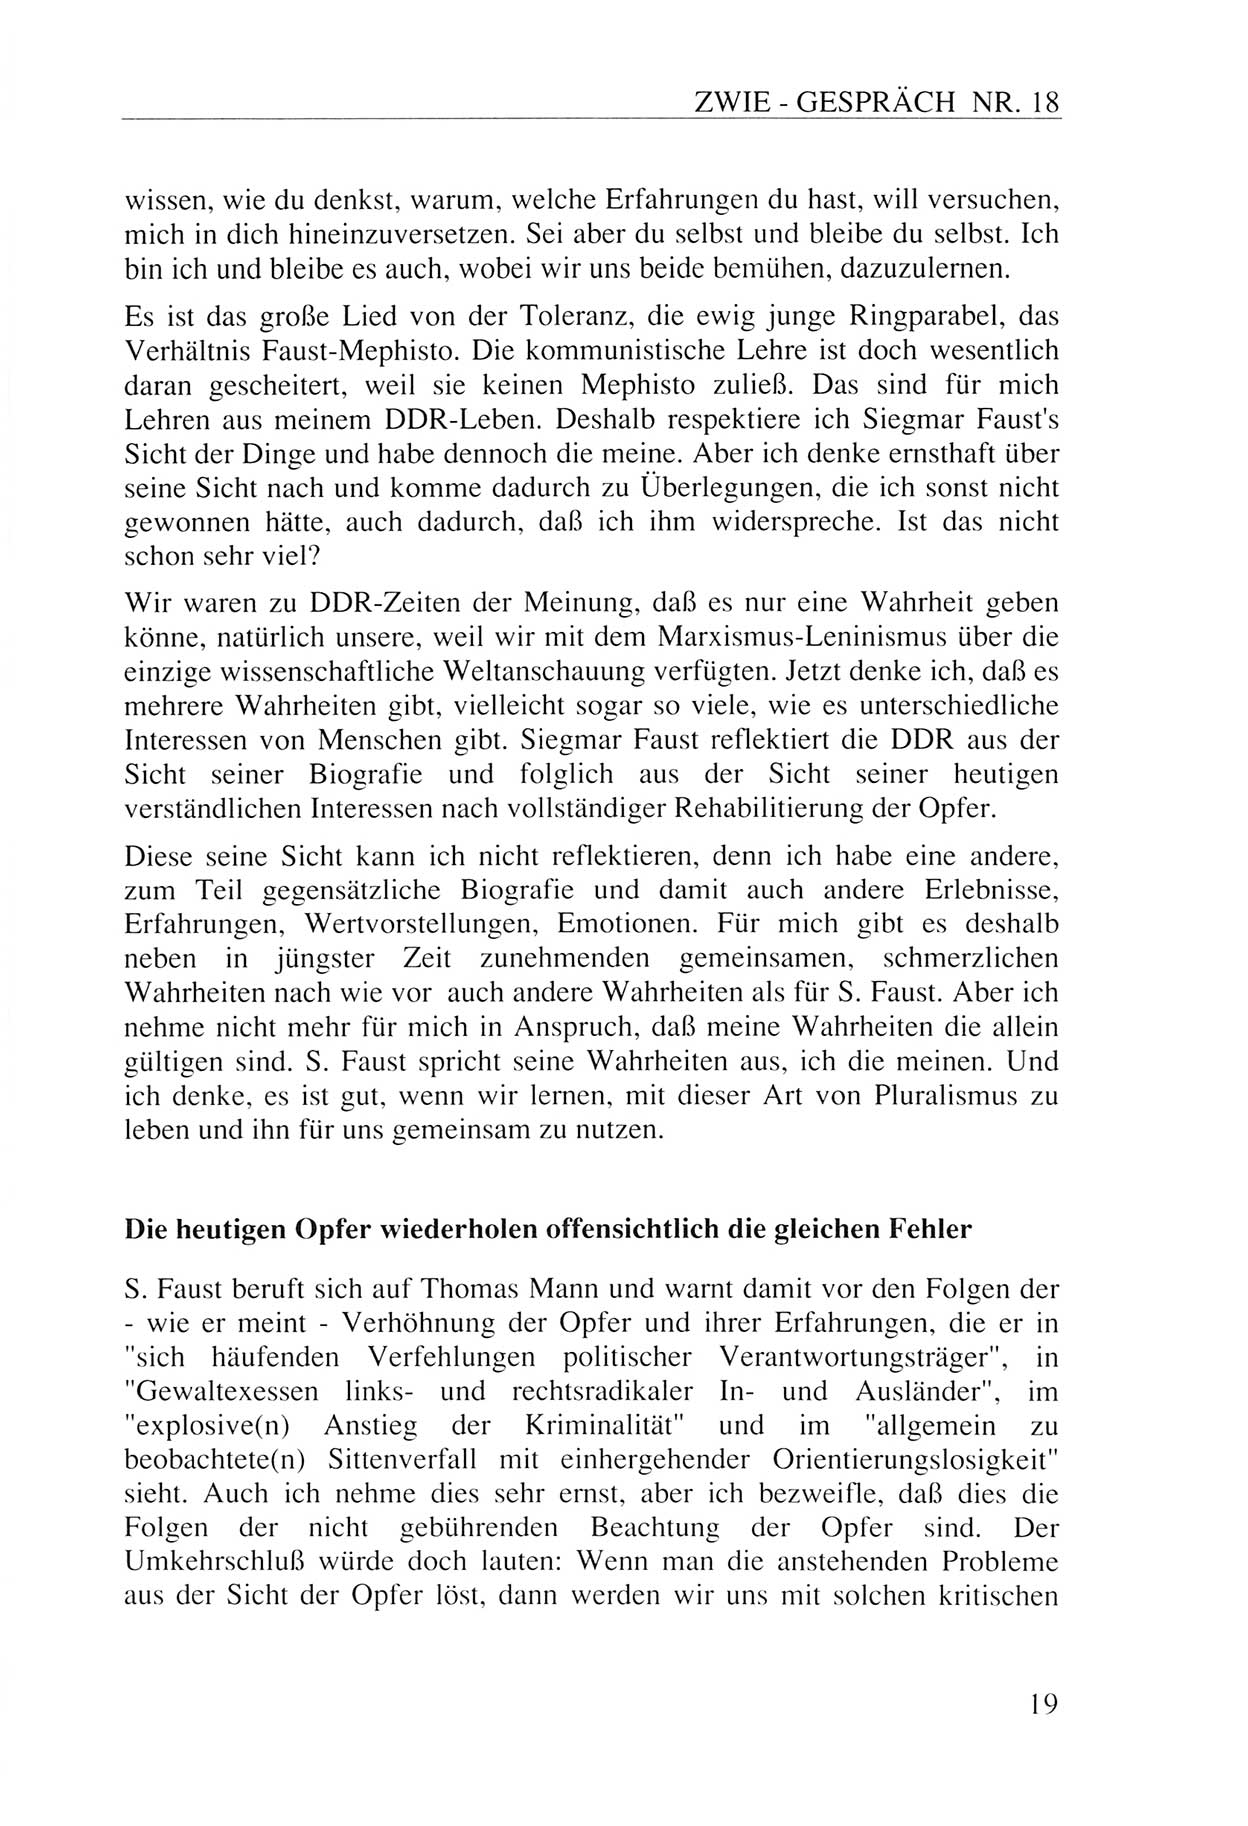 Zwie-Gespräch, Beiträge zur Aufarbeitung der Staatssicherheits-Vergangenheit [Deutsche Demokratische Republik (DDR)], Ausgabe Nr. 18, Berlin 1993, Seite 19 (Zwie-Gespr. Ausg. 18 1993, S. 19)